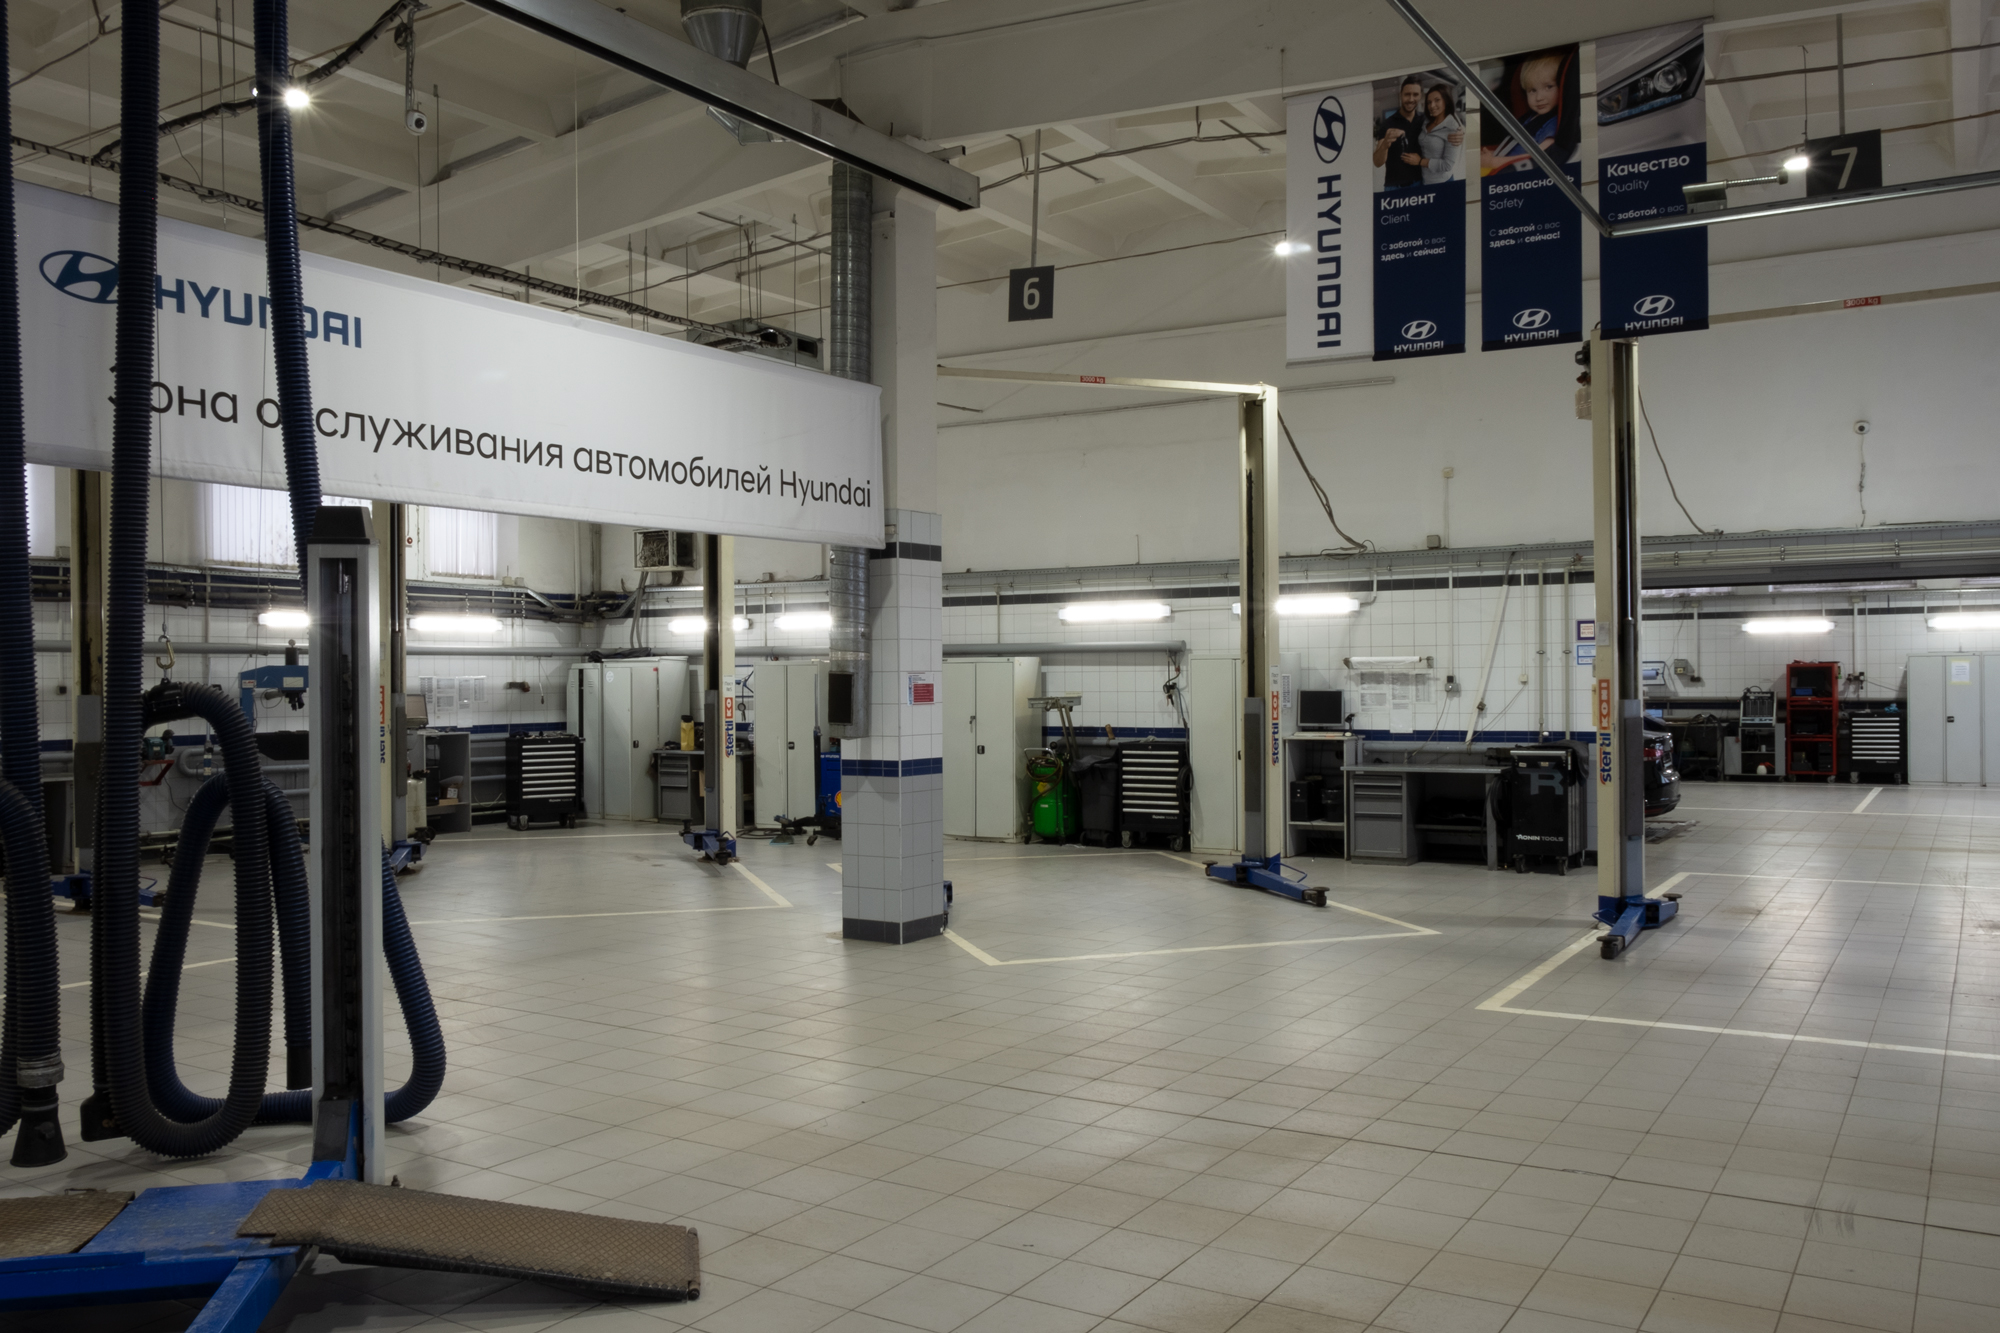 Реализованный проект освещения Сервисного центра Hyundai